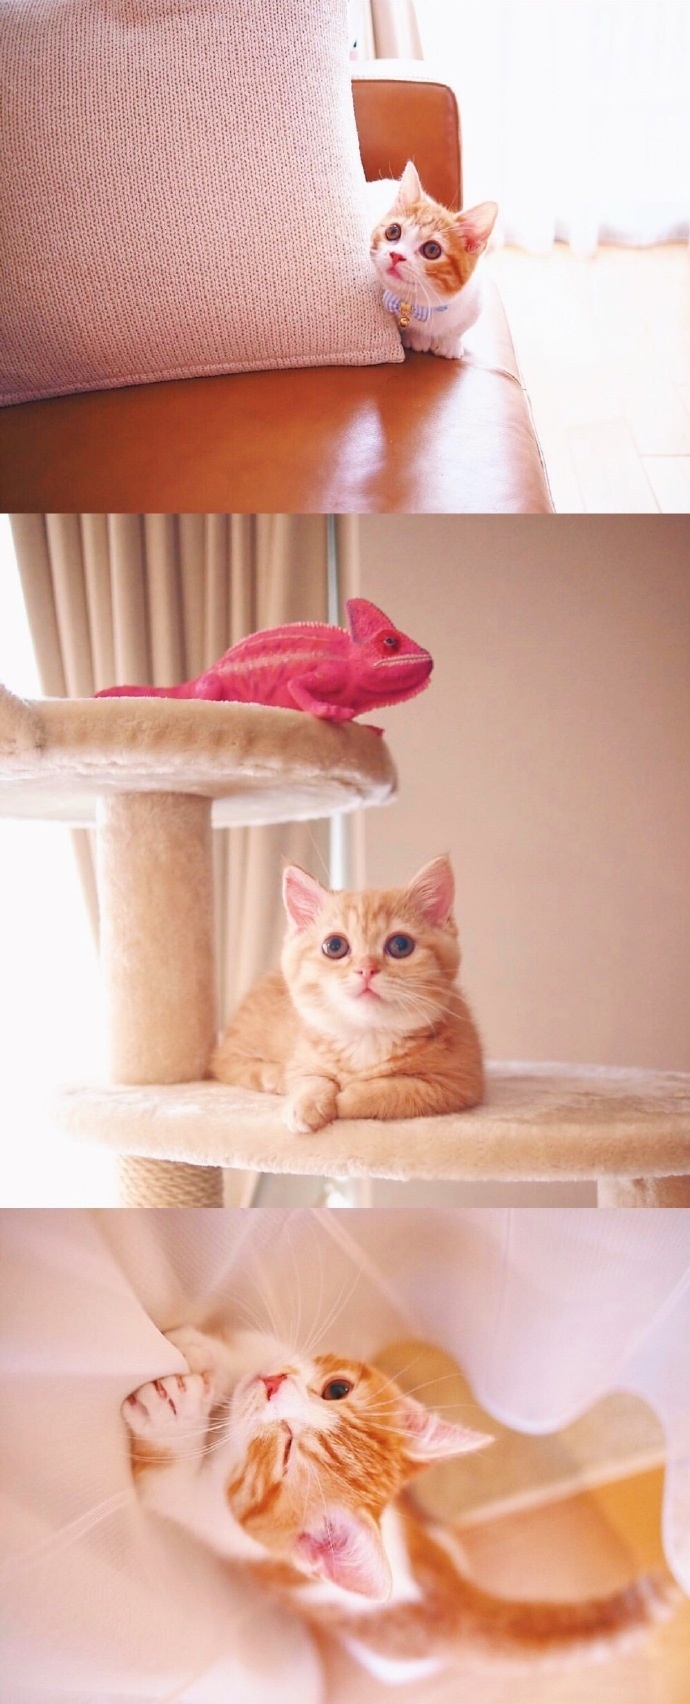 猫的图片可爱 很萌的橘猫图片(3)